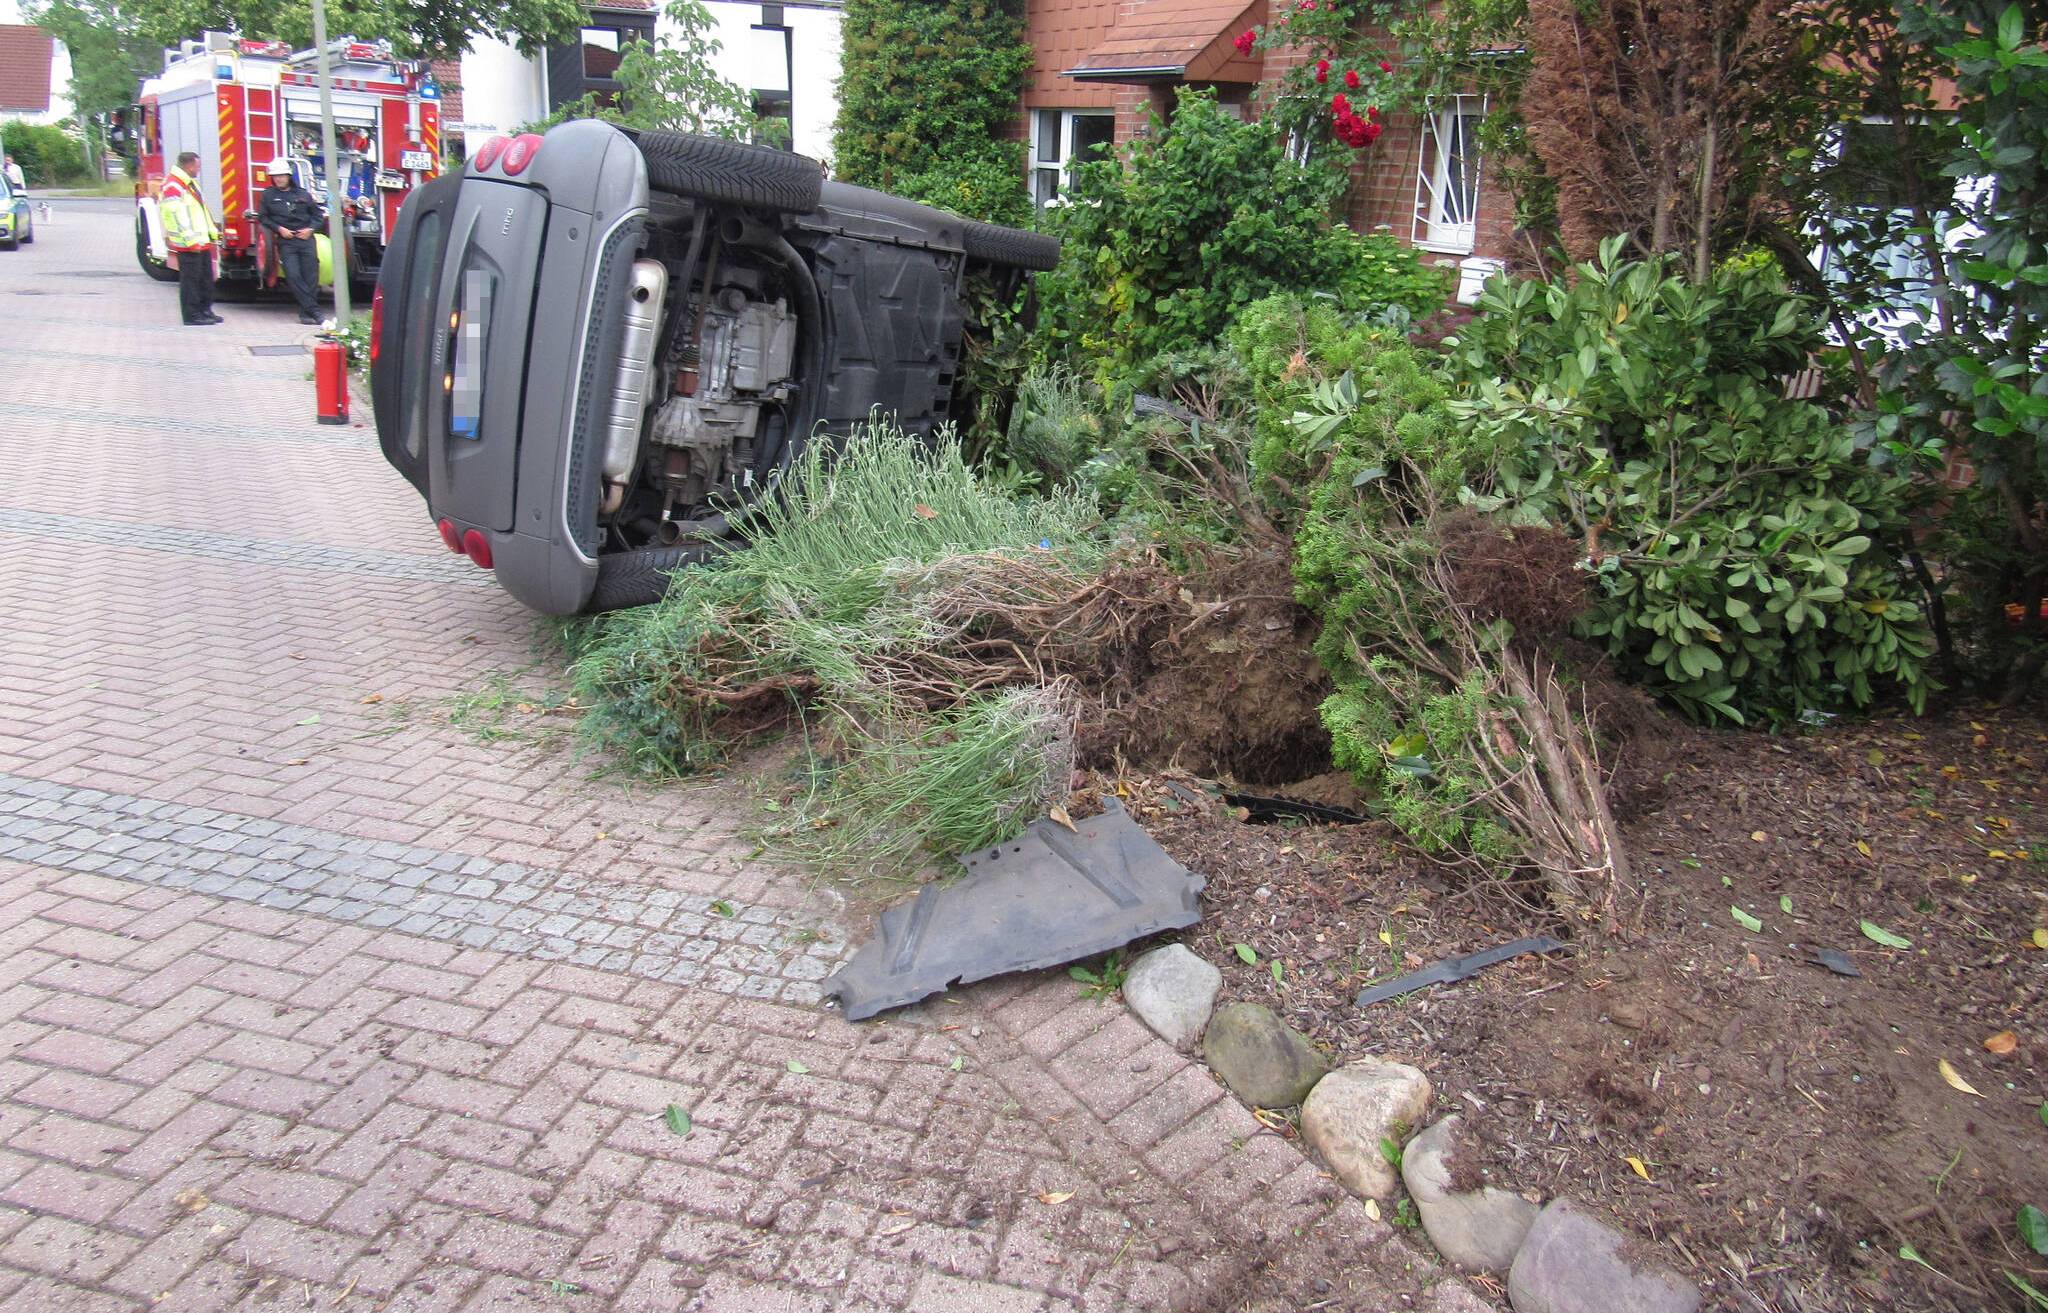  Unfall in Erkrath: 18-Jähriger fährt Mann fast um - Auto landet in Vorgarten. 